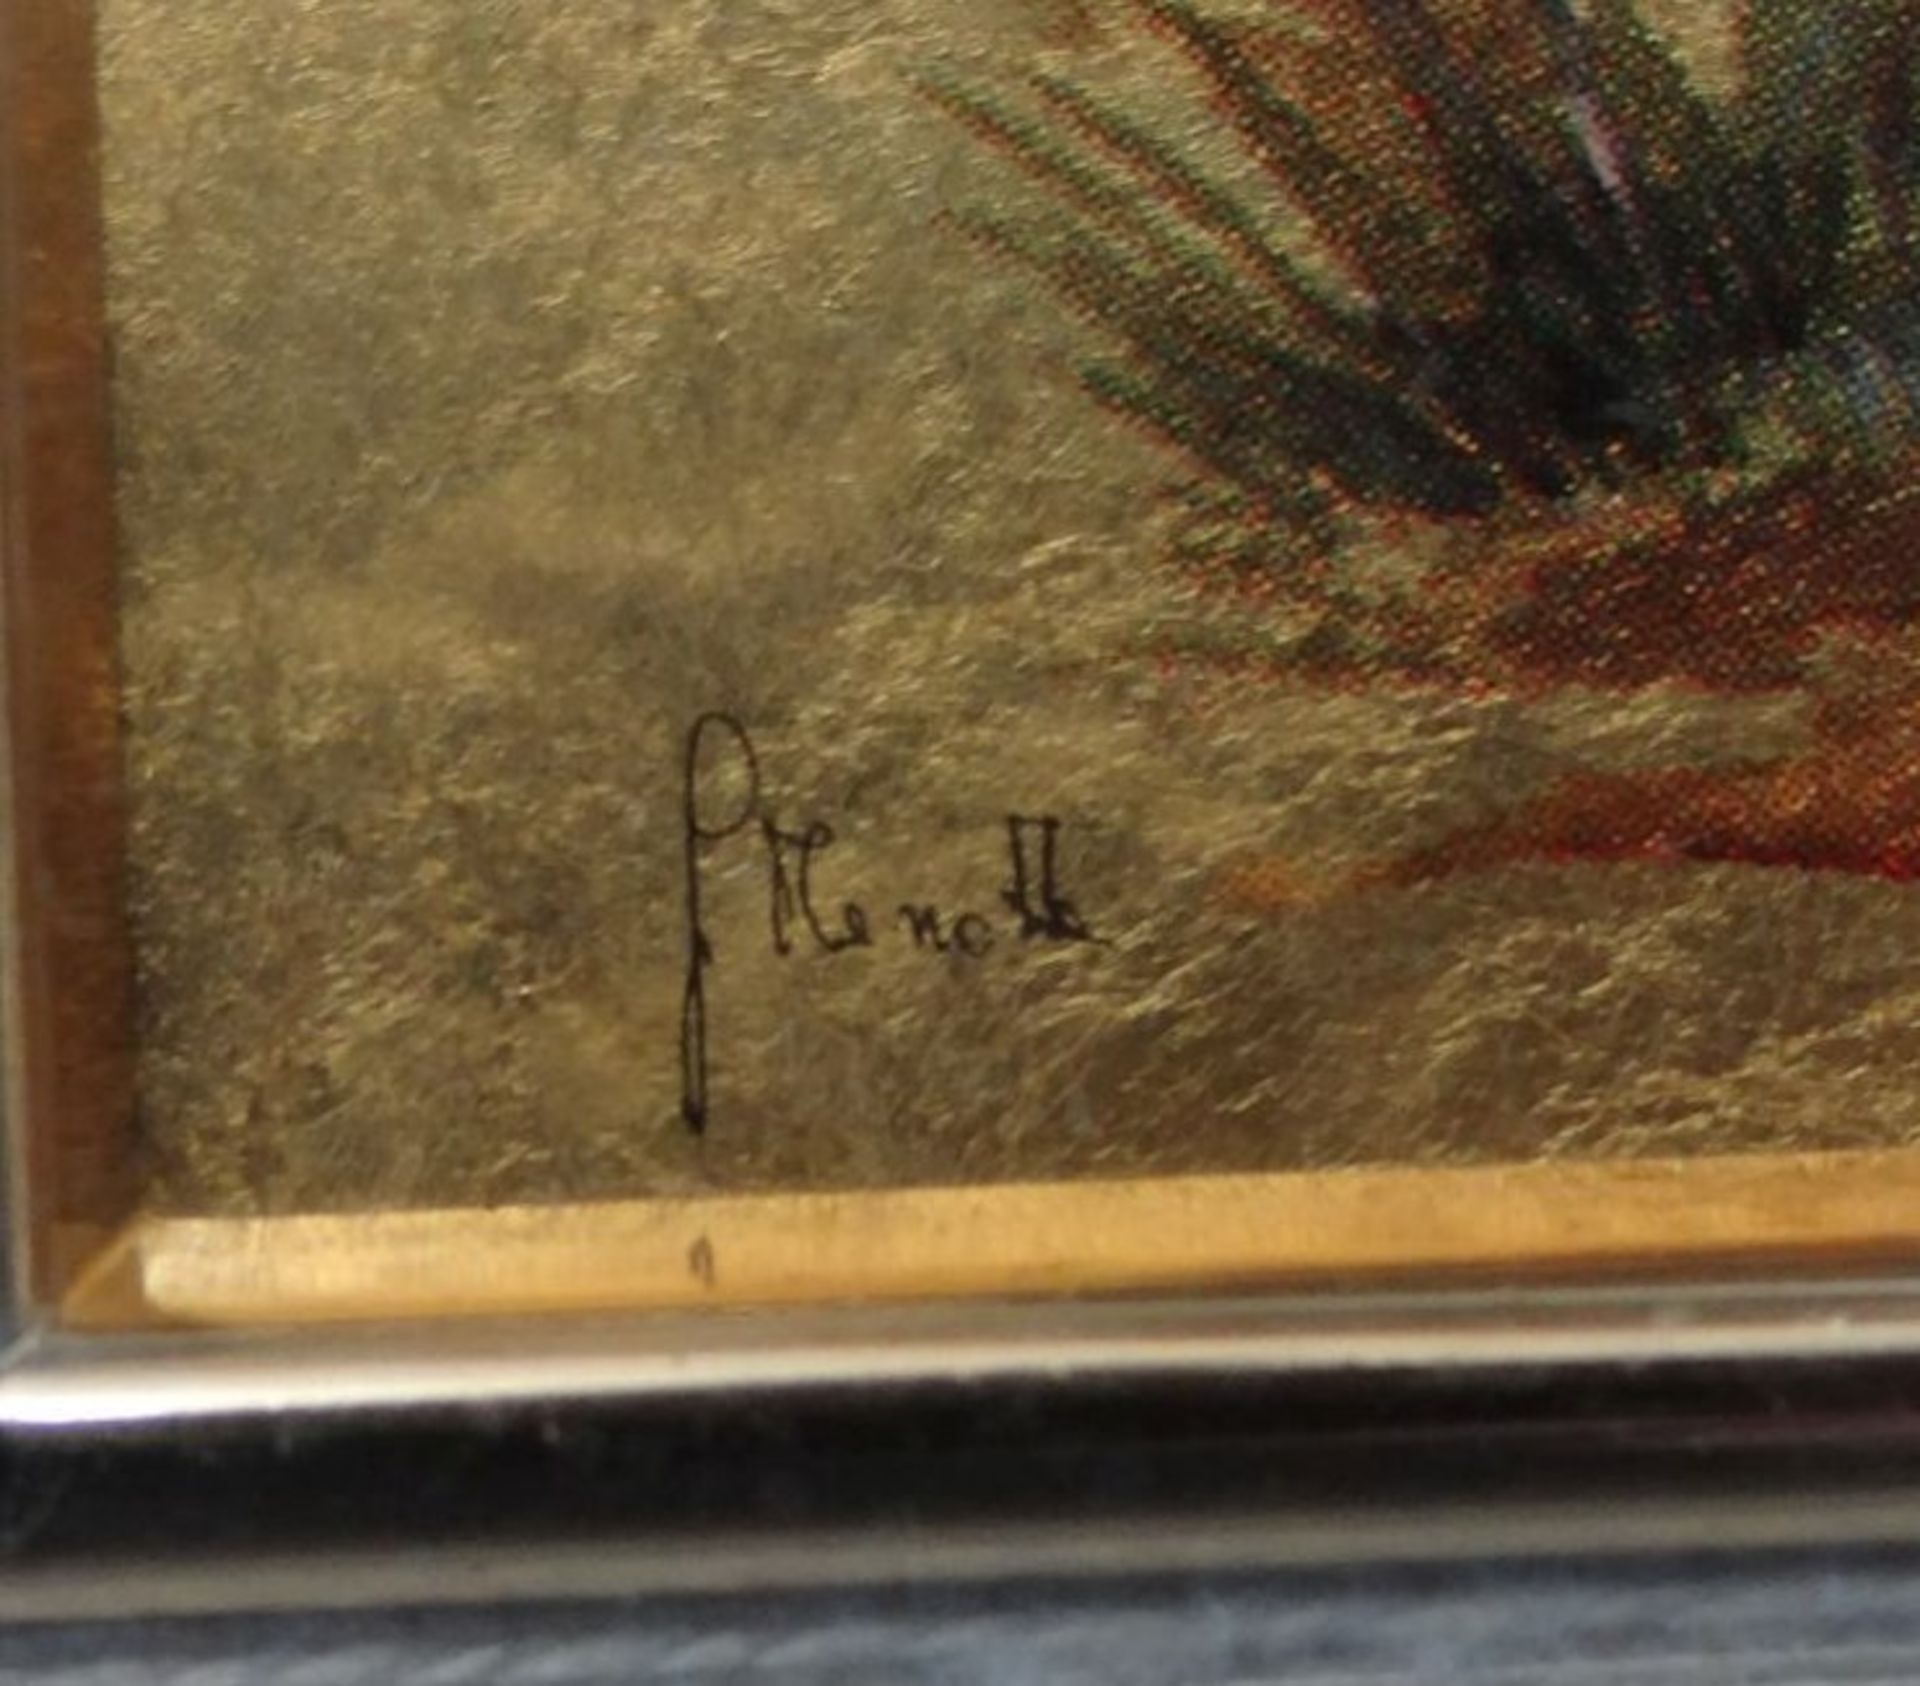 3 kl. Blattgold-Bildchen, signiert, 4x6,5 cm, breit gerahmt, 18,5x20,5 cm - Bild 5 aus 6